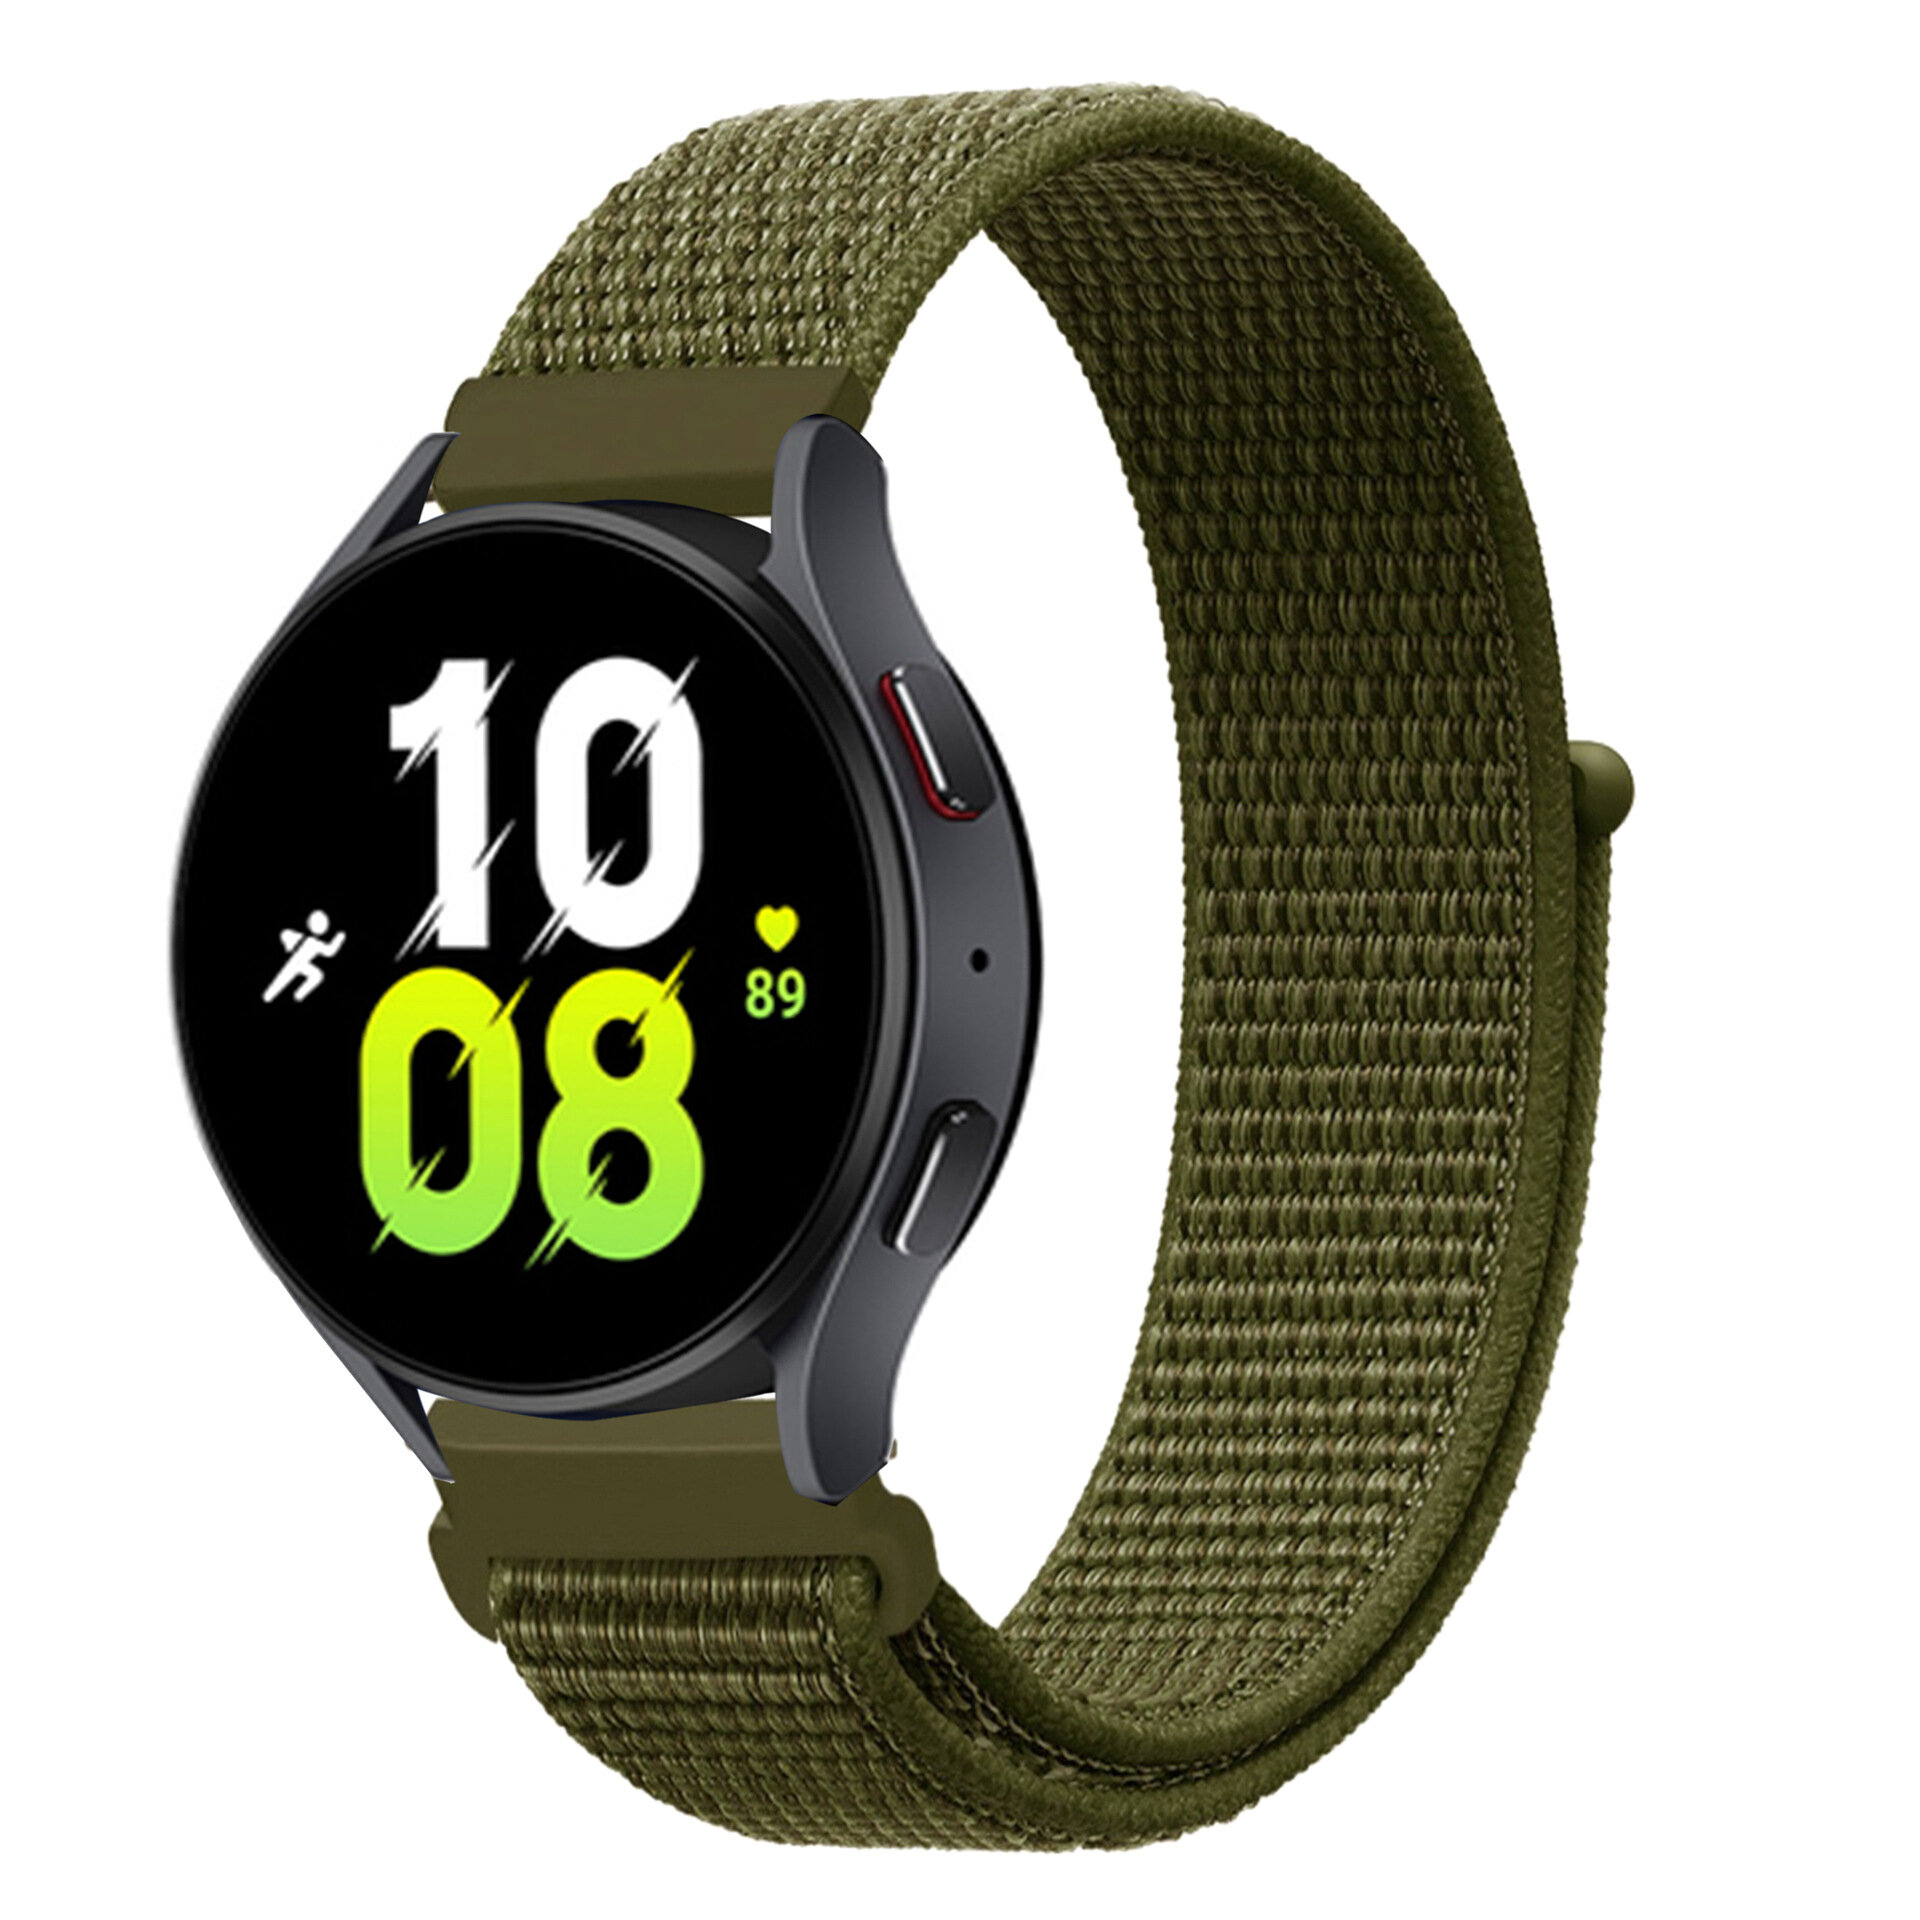 Нейлоновый универсальный ремешок 20 мм для смарт-часов Garmin, Samsung Galaxy Watch, Huawei Watch, Honor, Xiaomi Amazfit, 36 оливково-зеленый